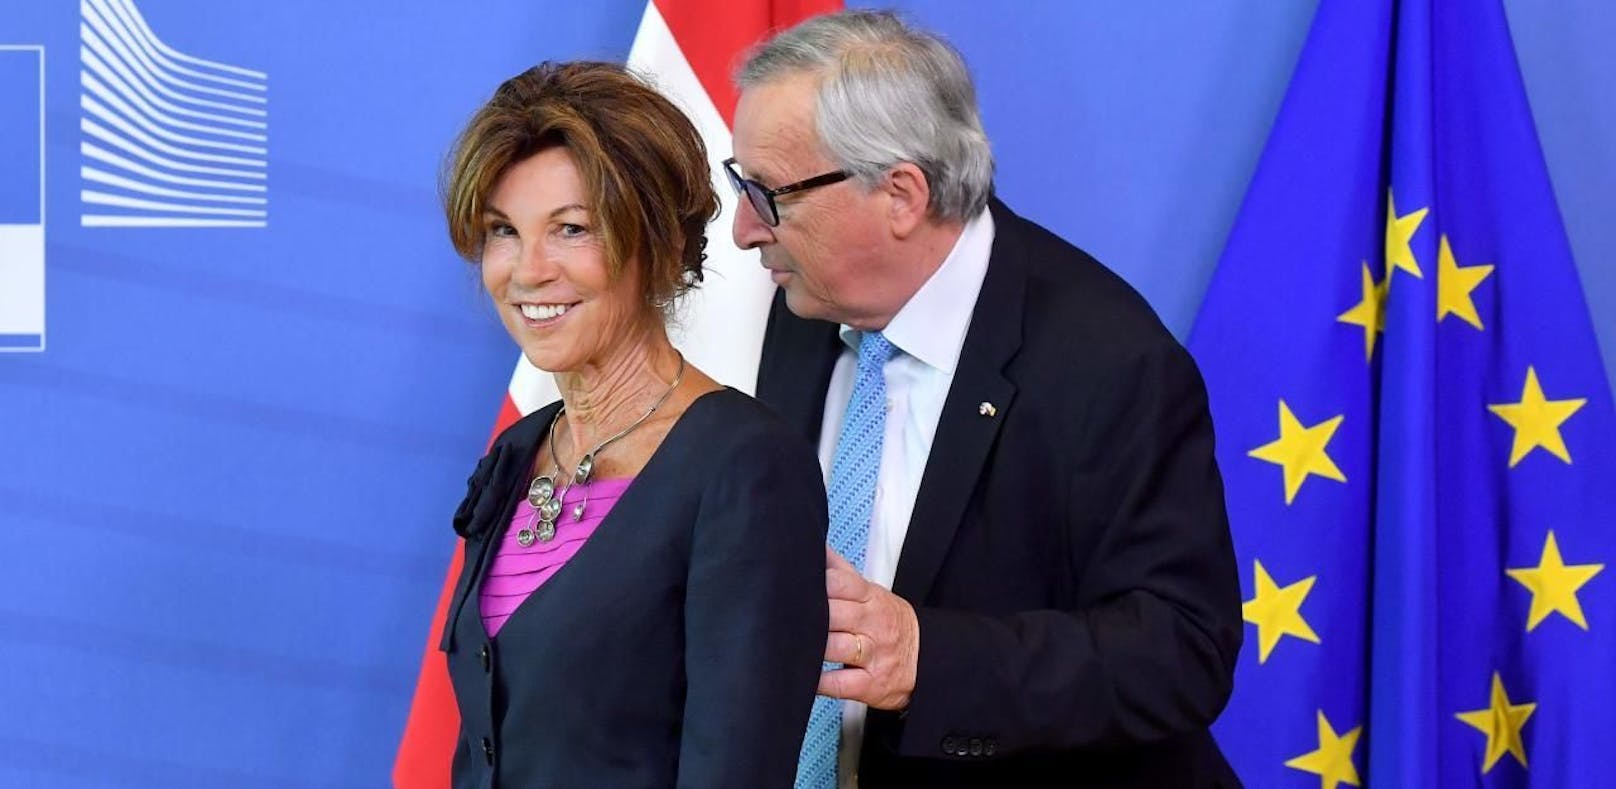 Bierlein in Brüssel, Juncker mit Flirt-Attacke